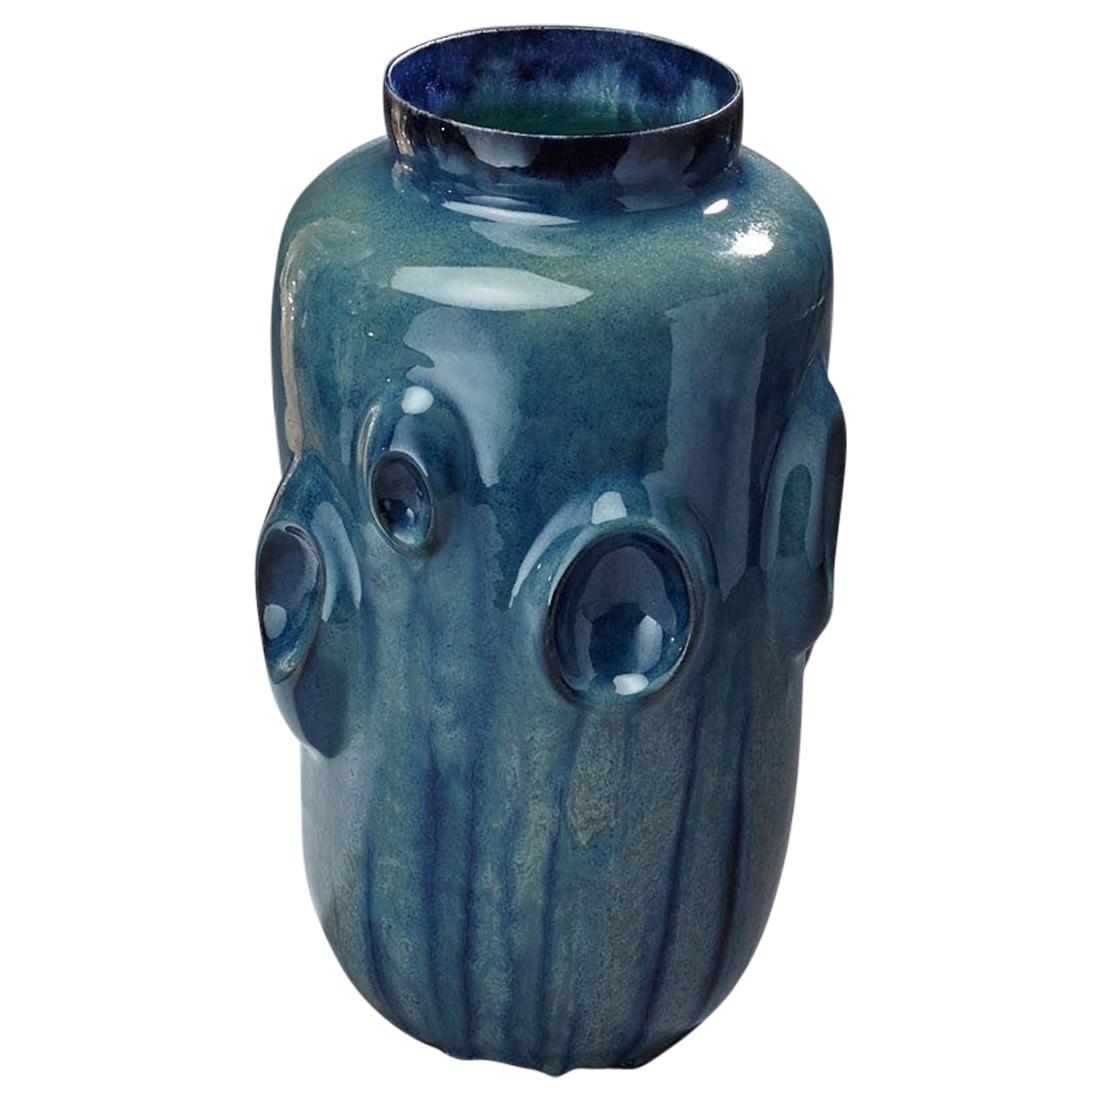 Ceramic Vase by Violante Lodolo D'Oria Glazed Stoneware Contemporary